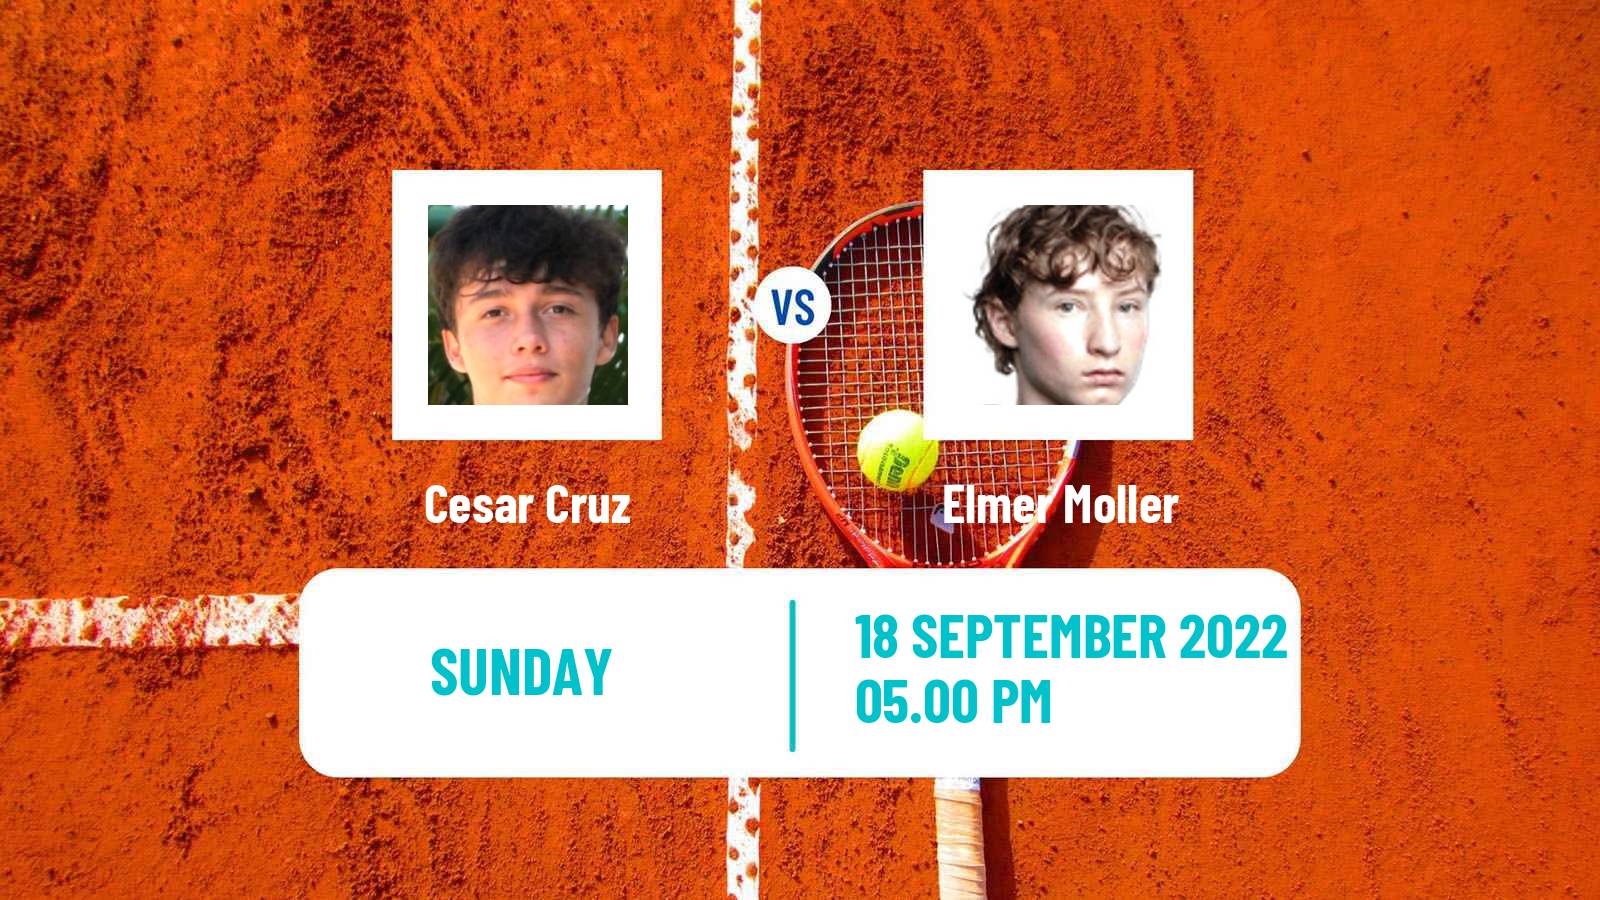 Tennis Davis Cup World Group II Cesar Cruz - Elmer Moller